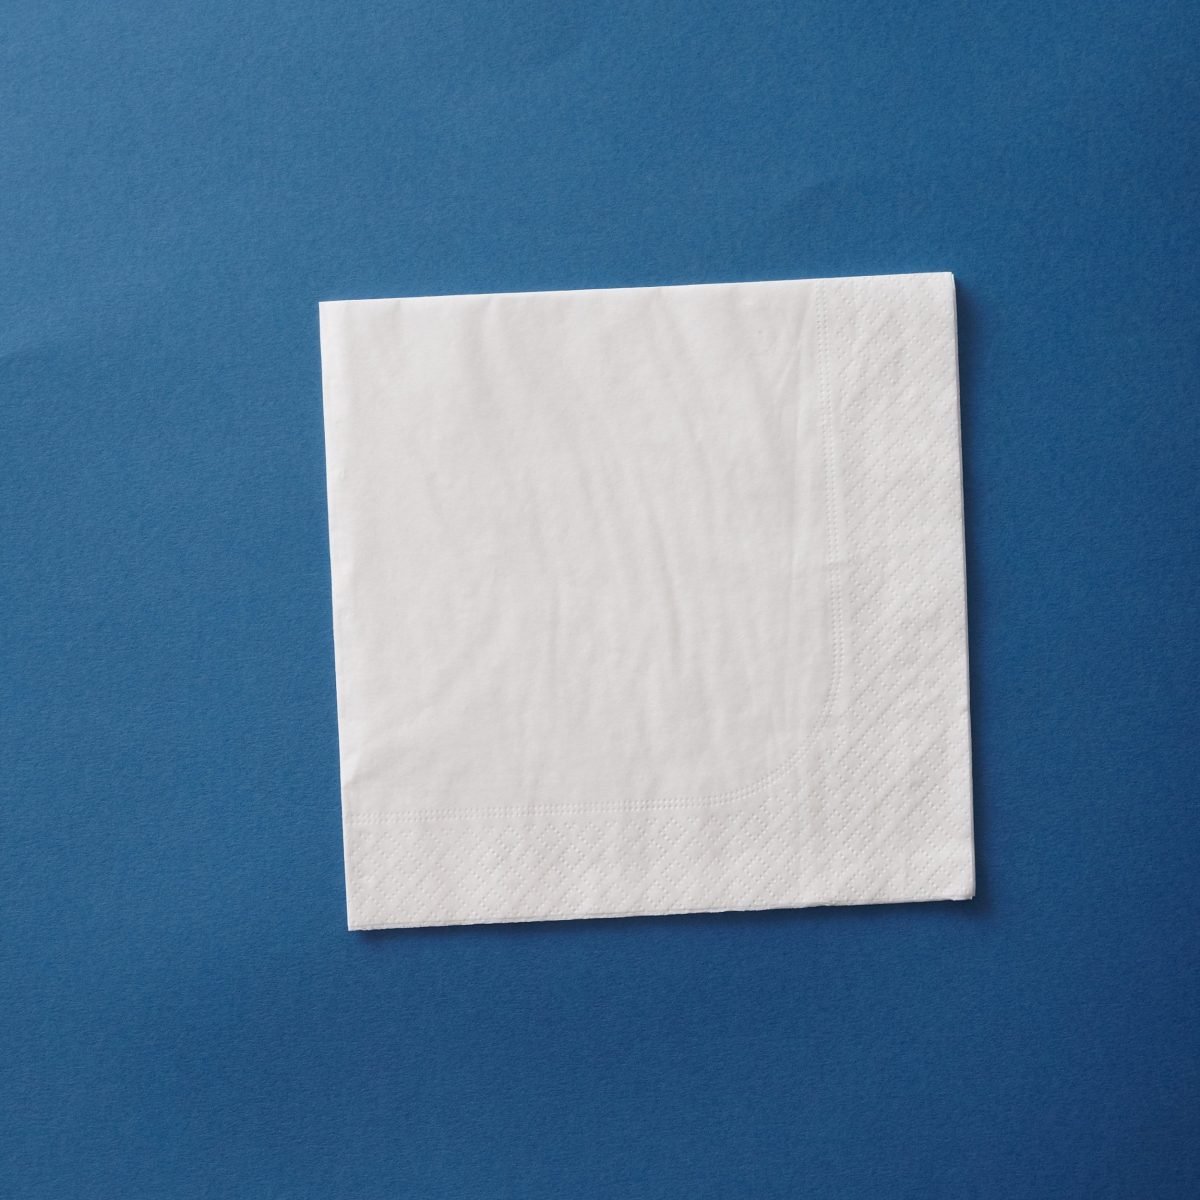 how-too-eye-shirt-napkin-01